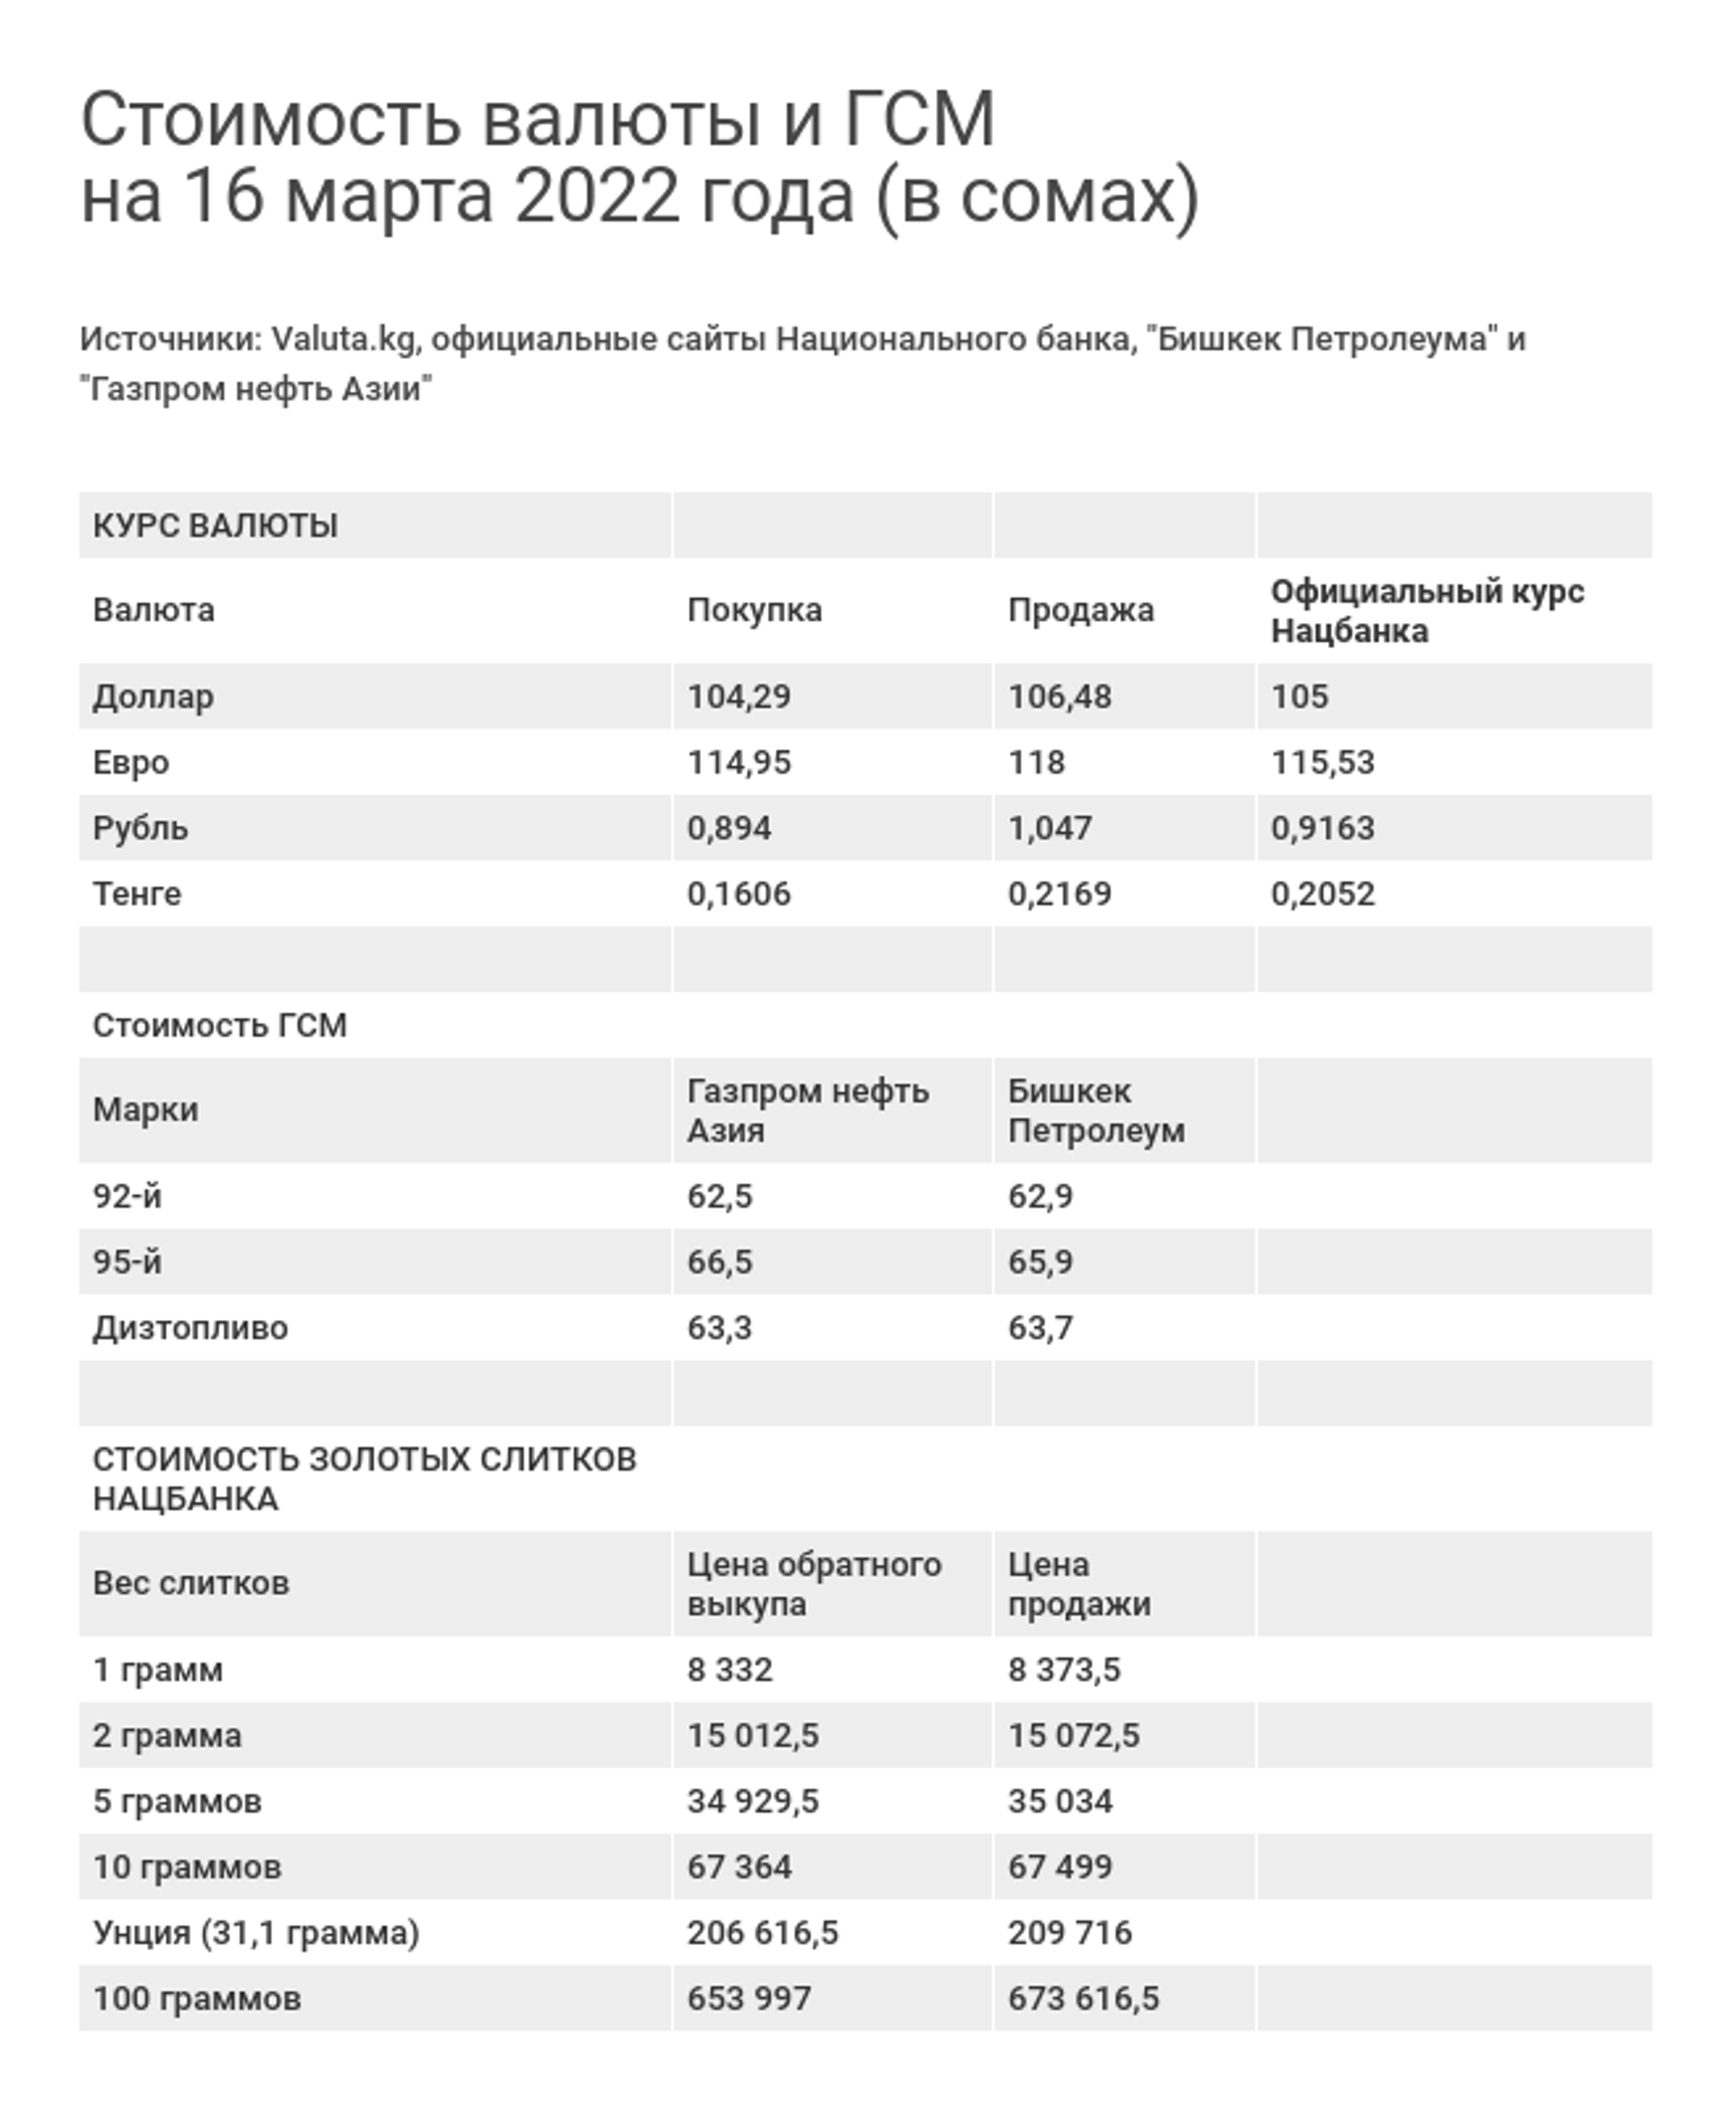 Стоимость валюты и ГСМ на 16 марта 2022 года (в сомах) - Sputnik Кыргызстан, 1920, 16.03.2022